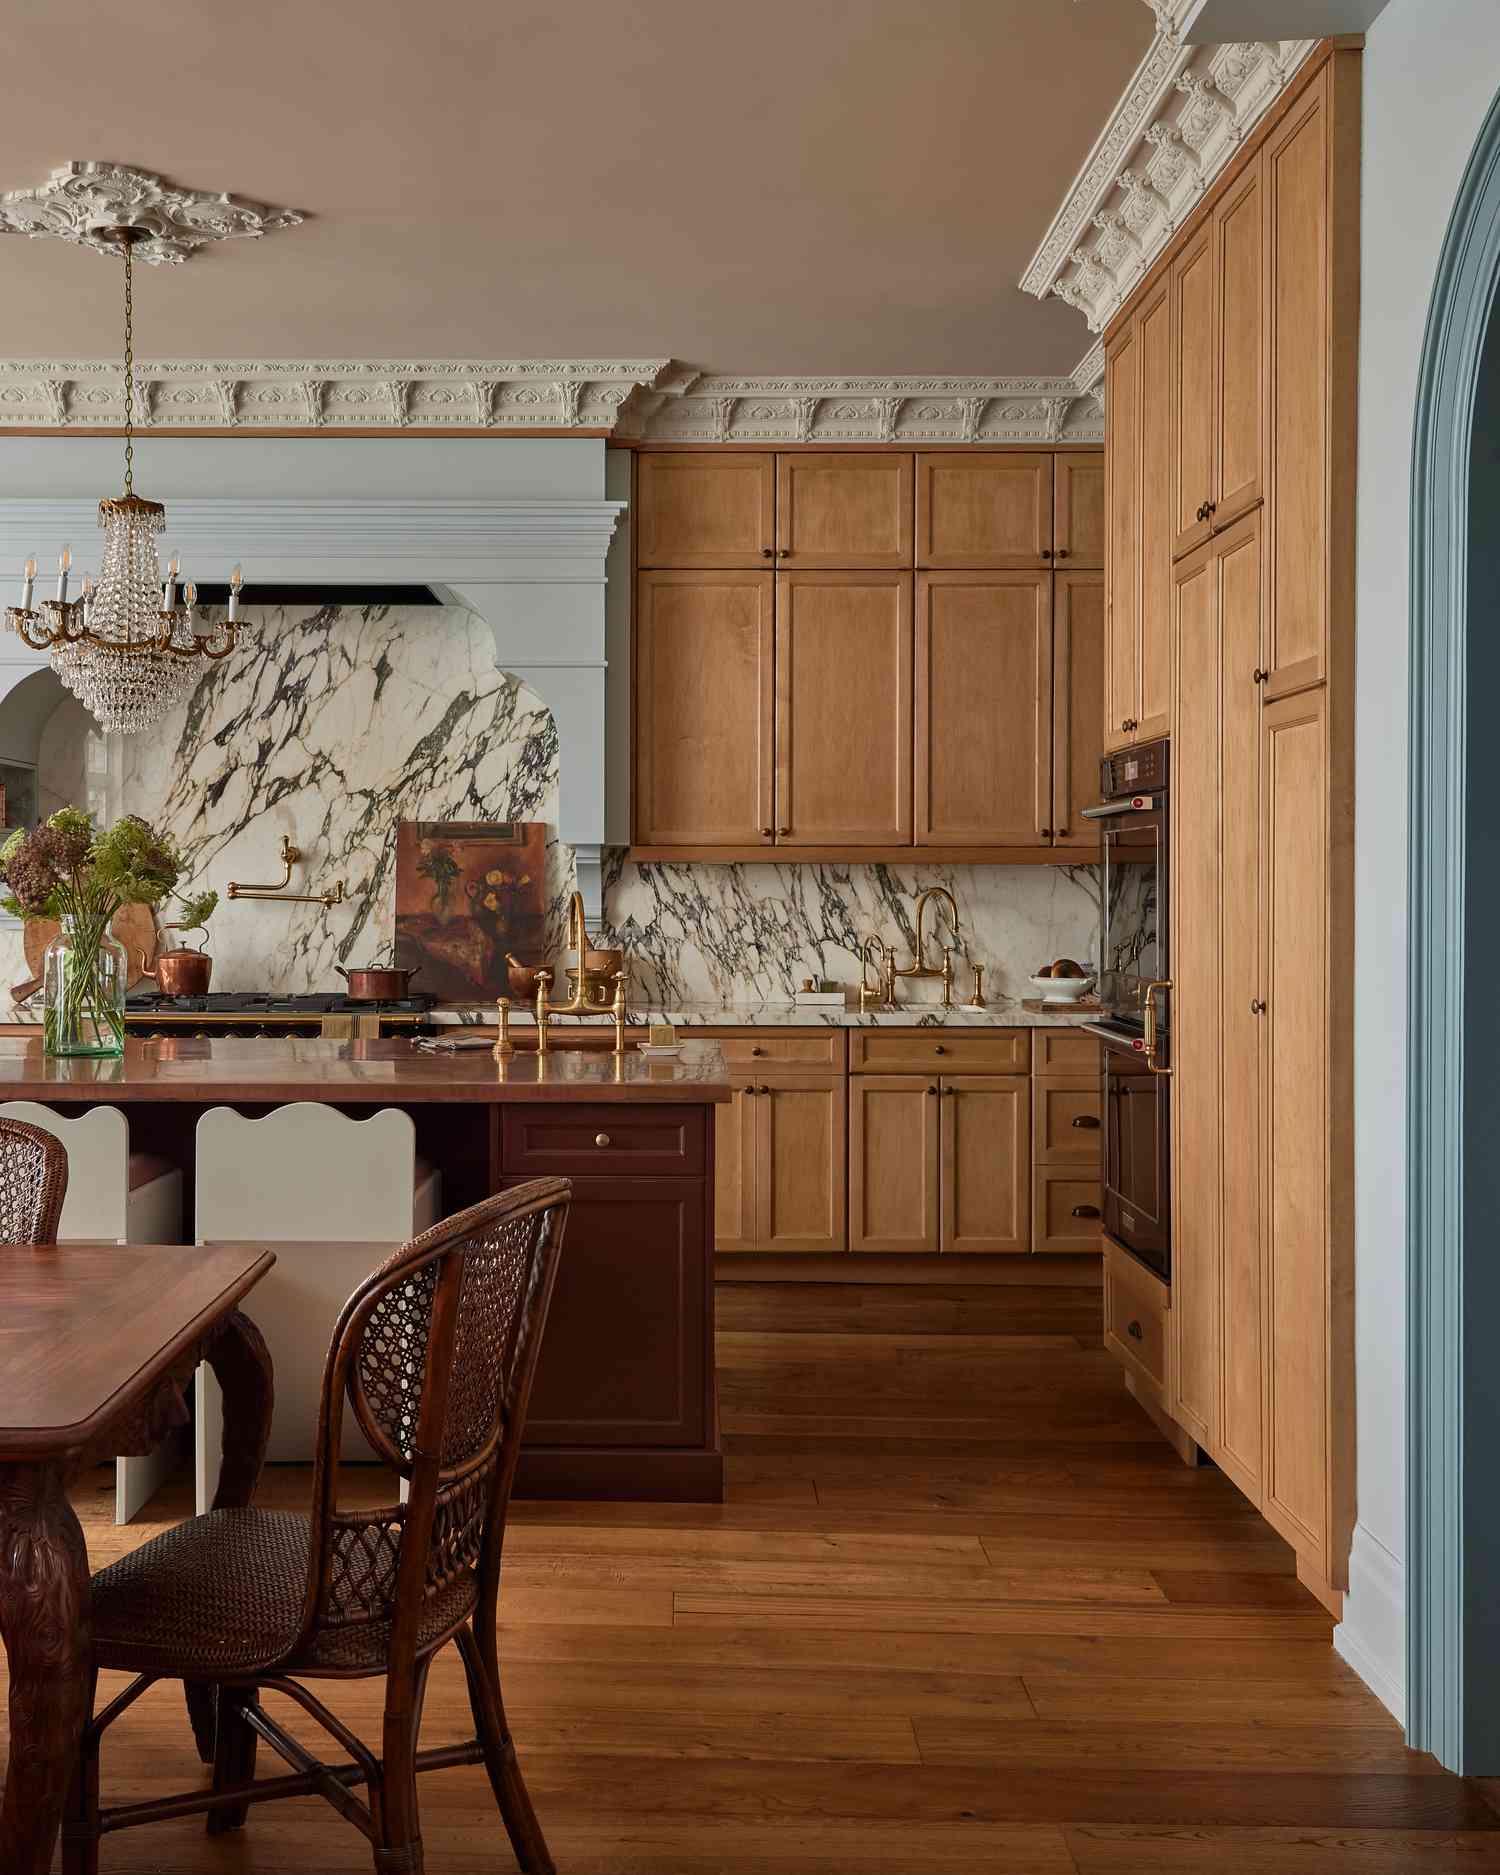 Eine maßgeschneiderte Küche mit verschnörkelten Verzierungen, einem Kronleuchter, flankiert von einem dekorativen Deckenmedaillon, und einer hellblauen Dunstabzugshaube